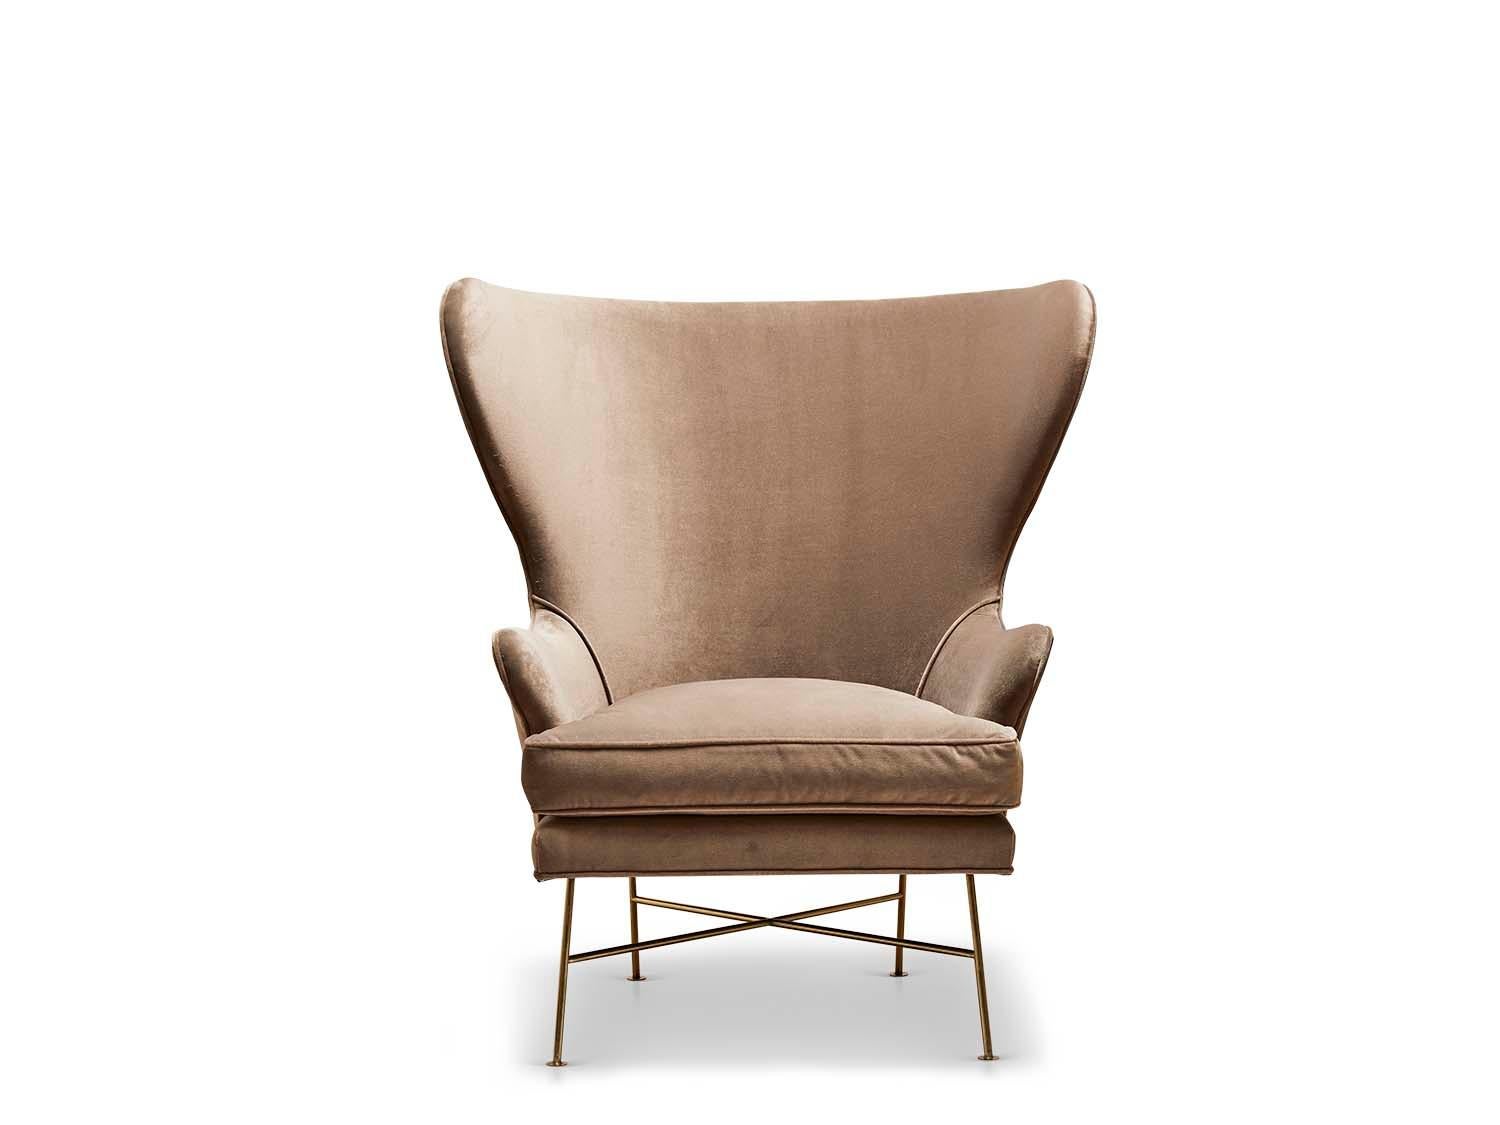 Der Highland Wingback Chair ist ein skulpturaler, breiter Stuhl mit minimalem Metallgestell und daunenumwickeltem Sitzkissen.

 